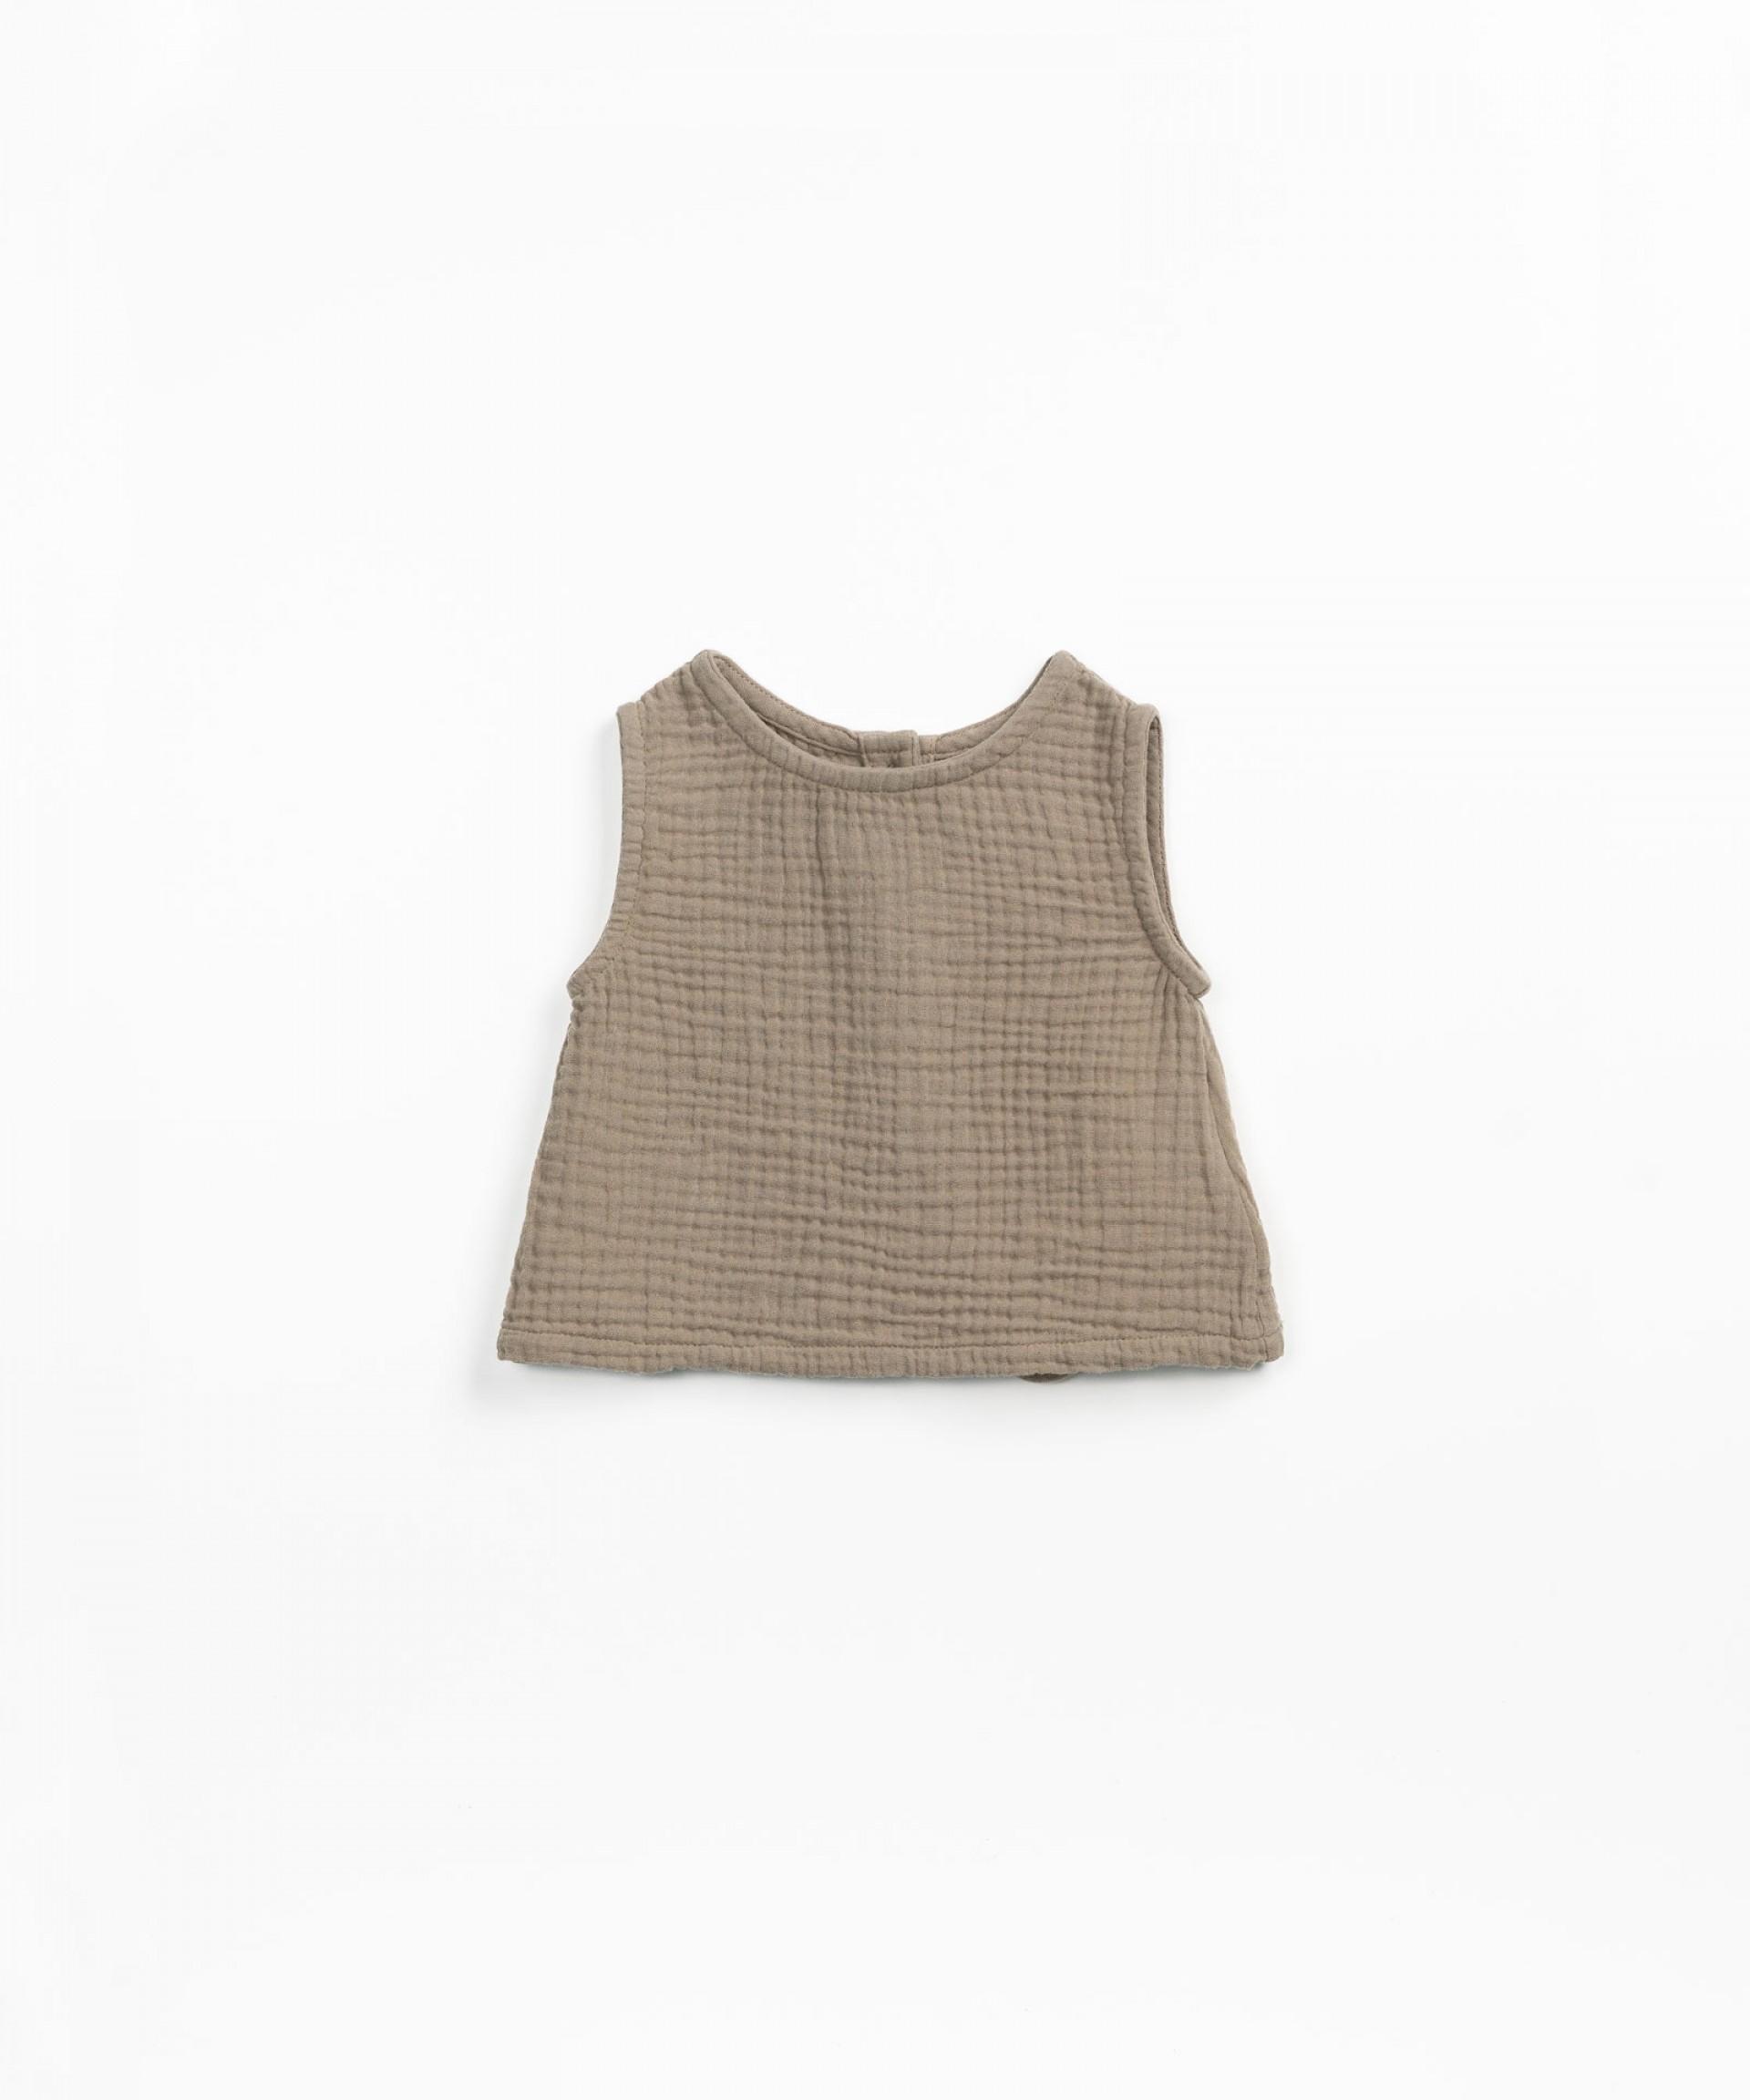 Blusa com abertura nas costas | Textile Art